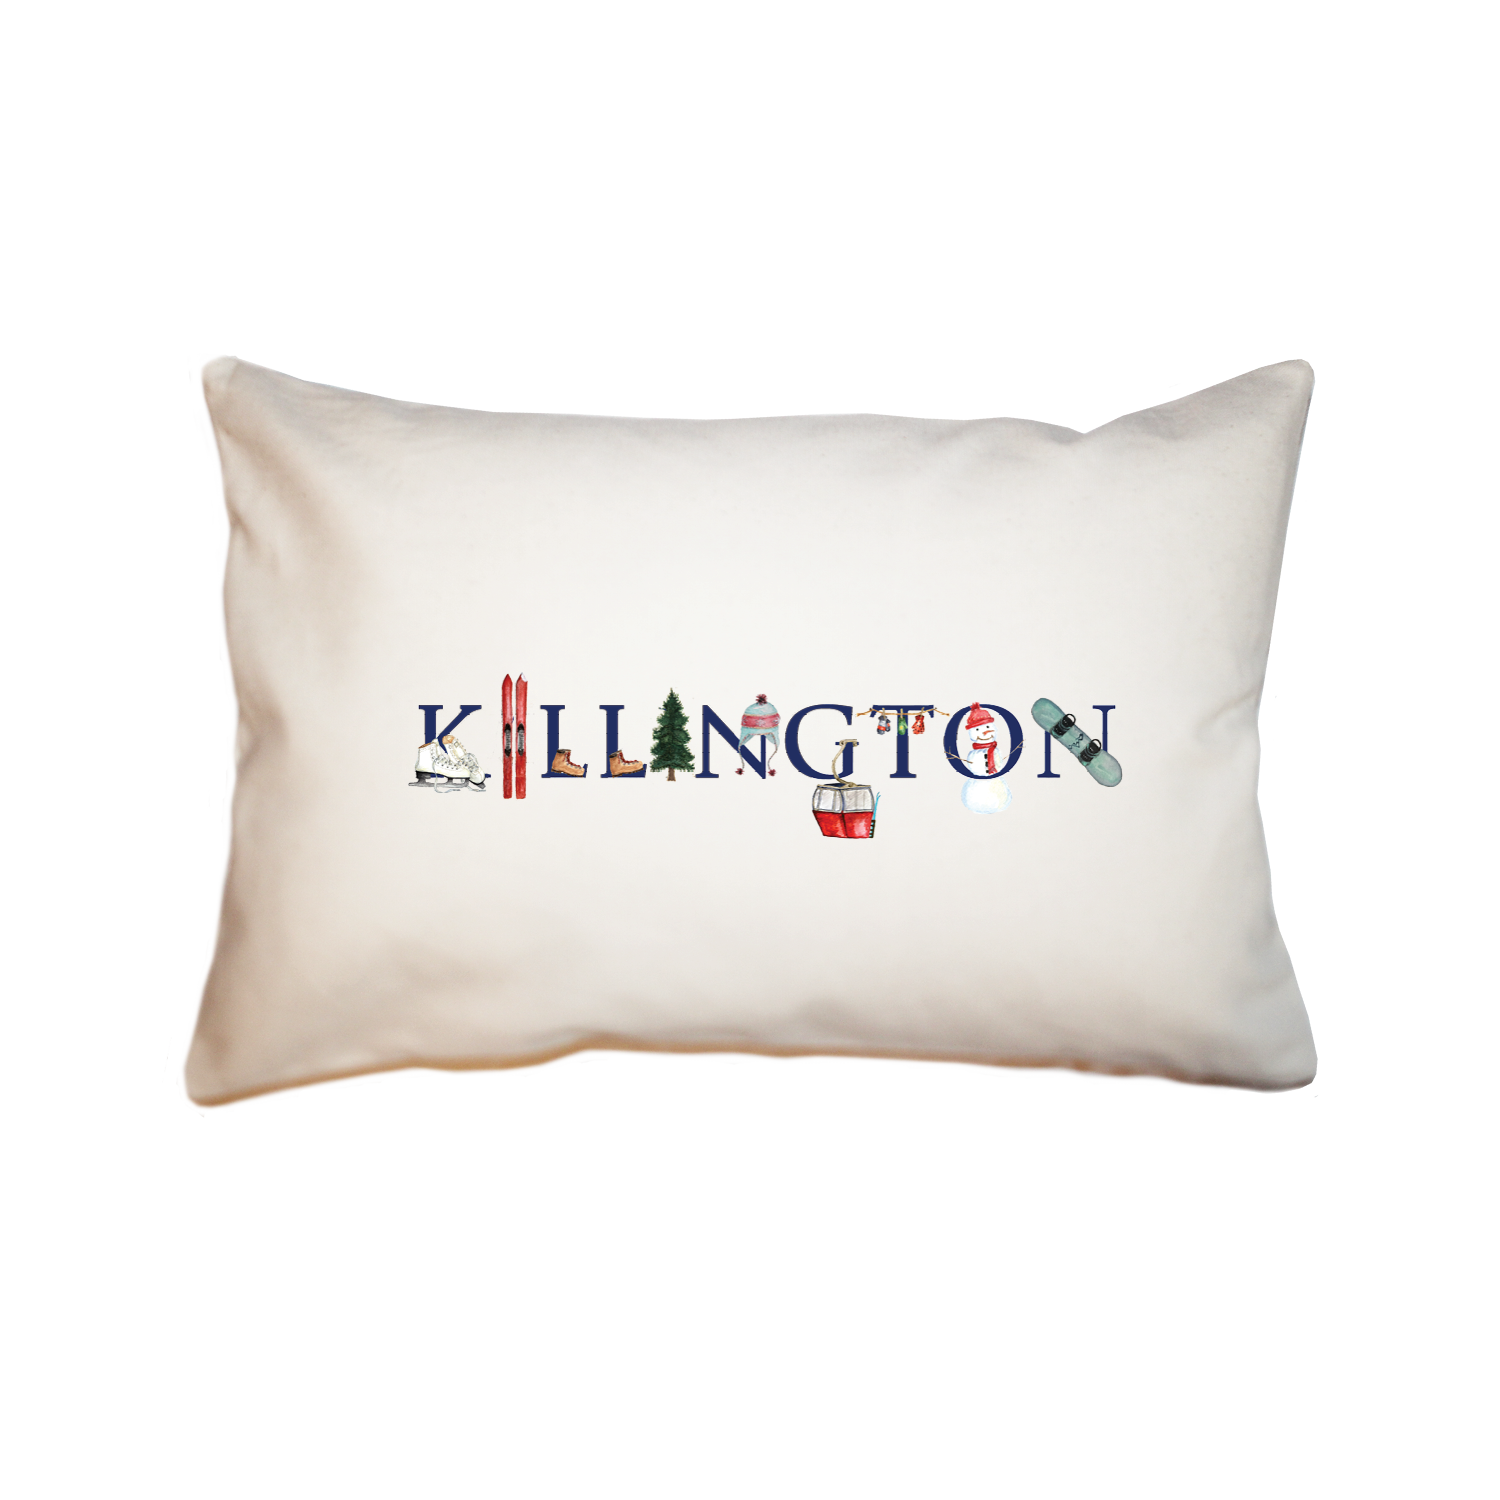 Killington large rectangle pillow